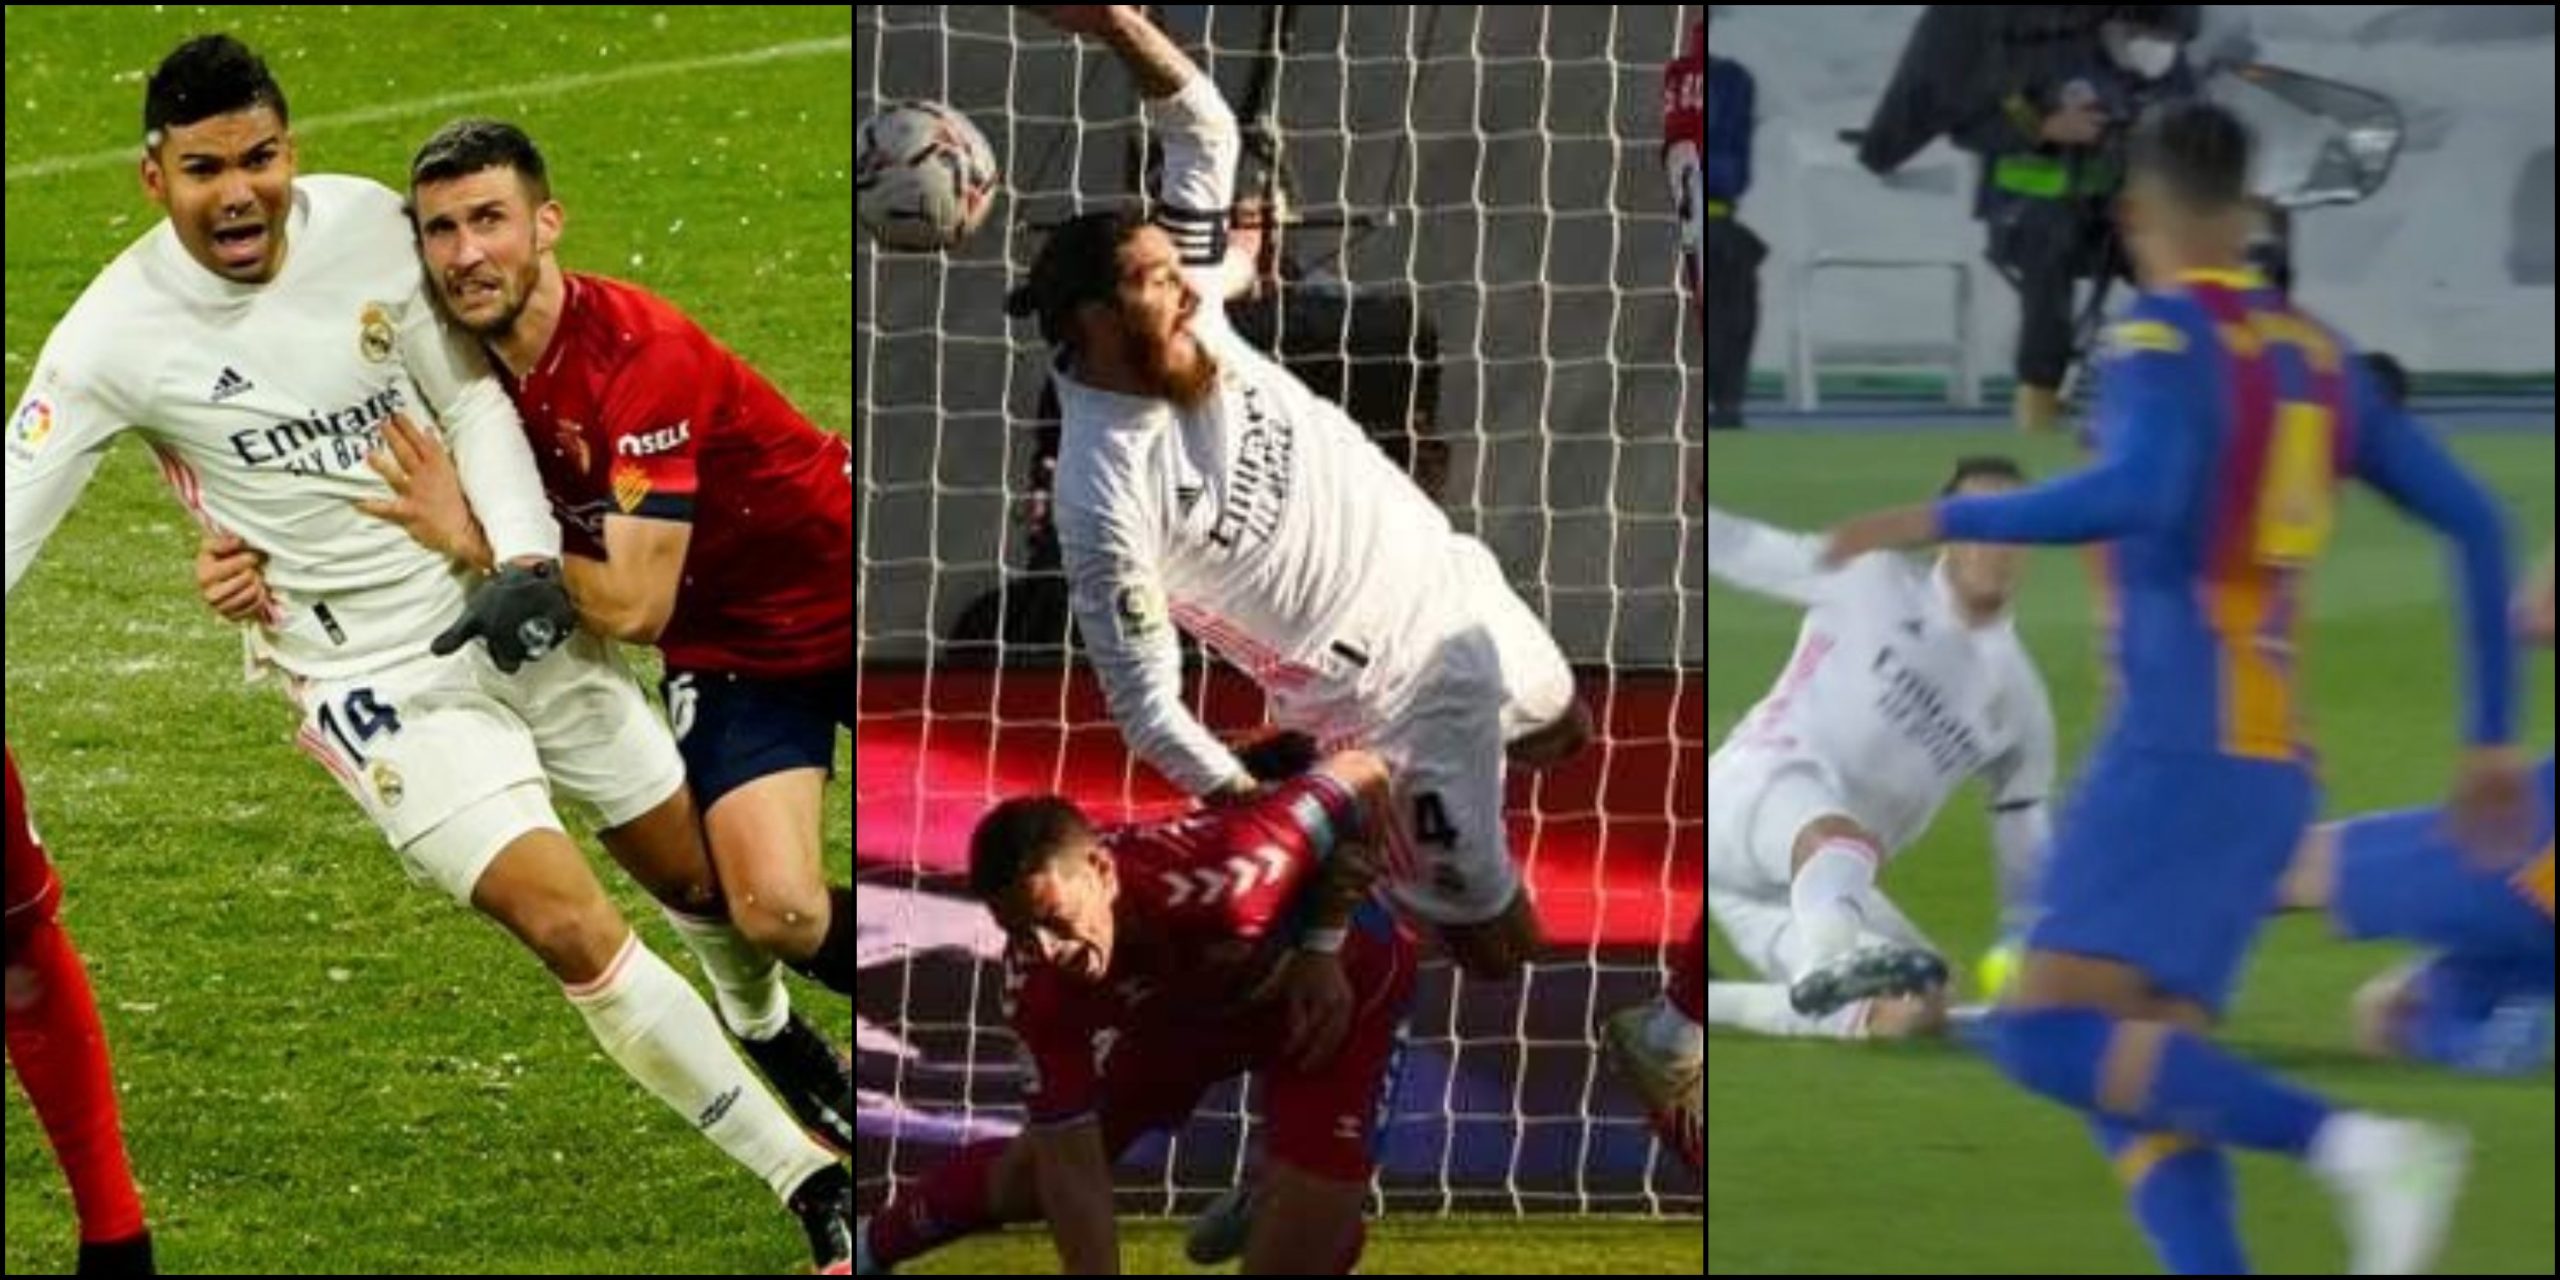 Penaltis sobre Casemiro, Ramos y entrada peligrosa sobre Lucas.